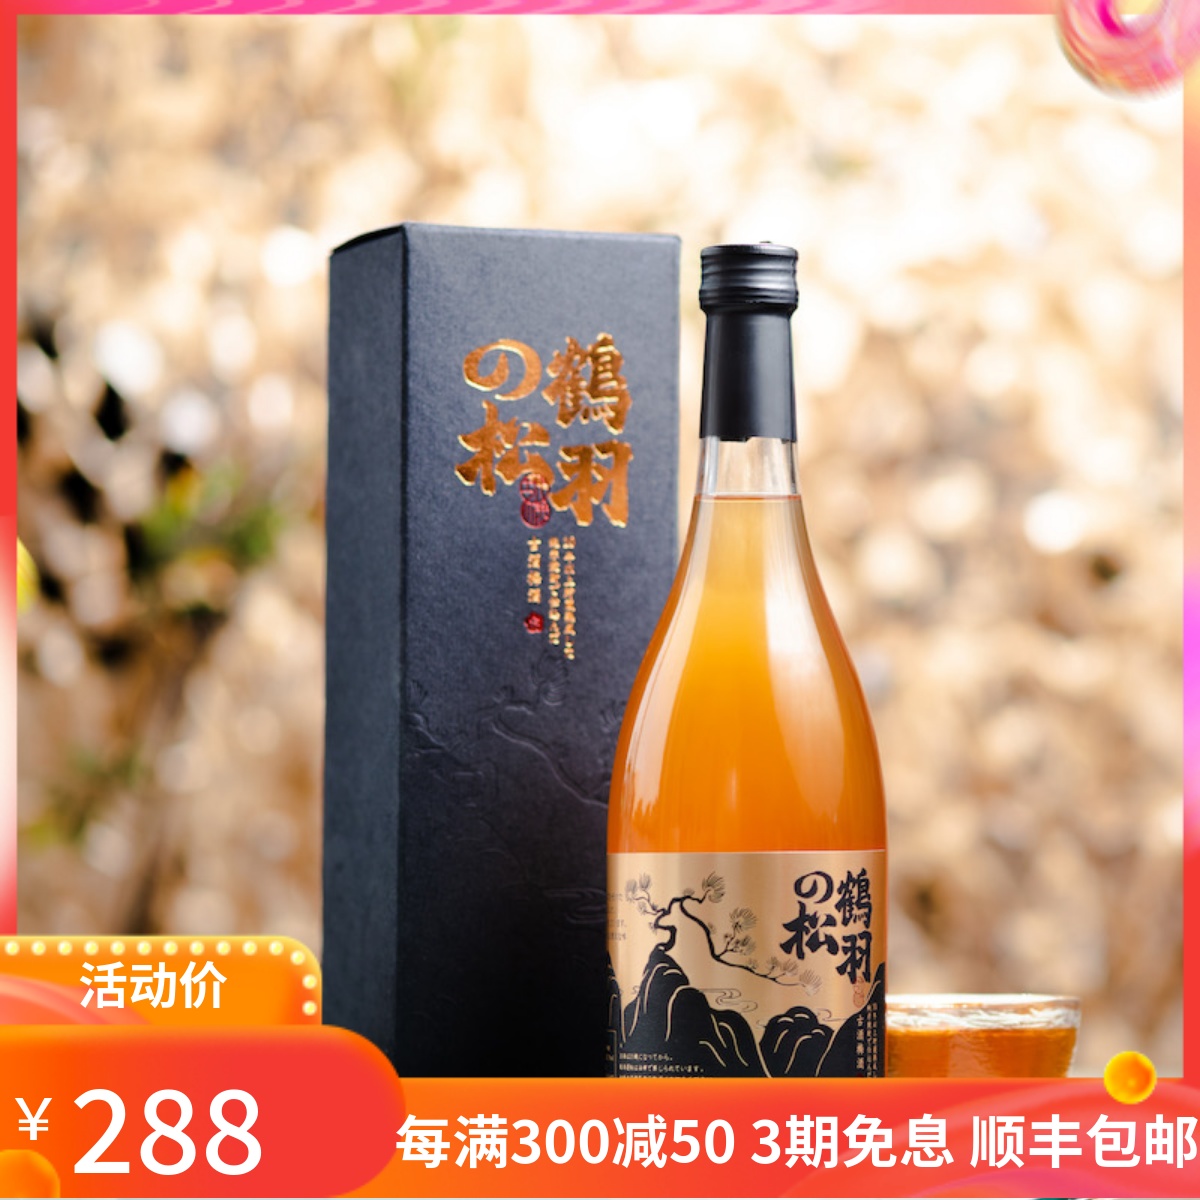 日本原装进口鹤羽的松古酒梅酒礼盒720ml 十年时光淬炼限量2000瓶